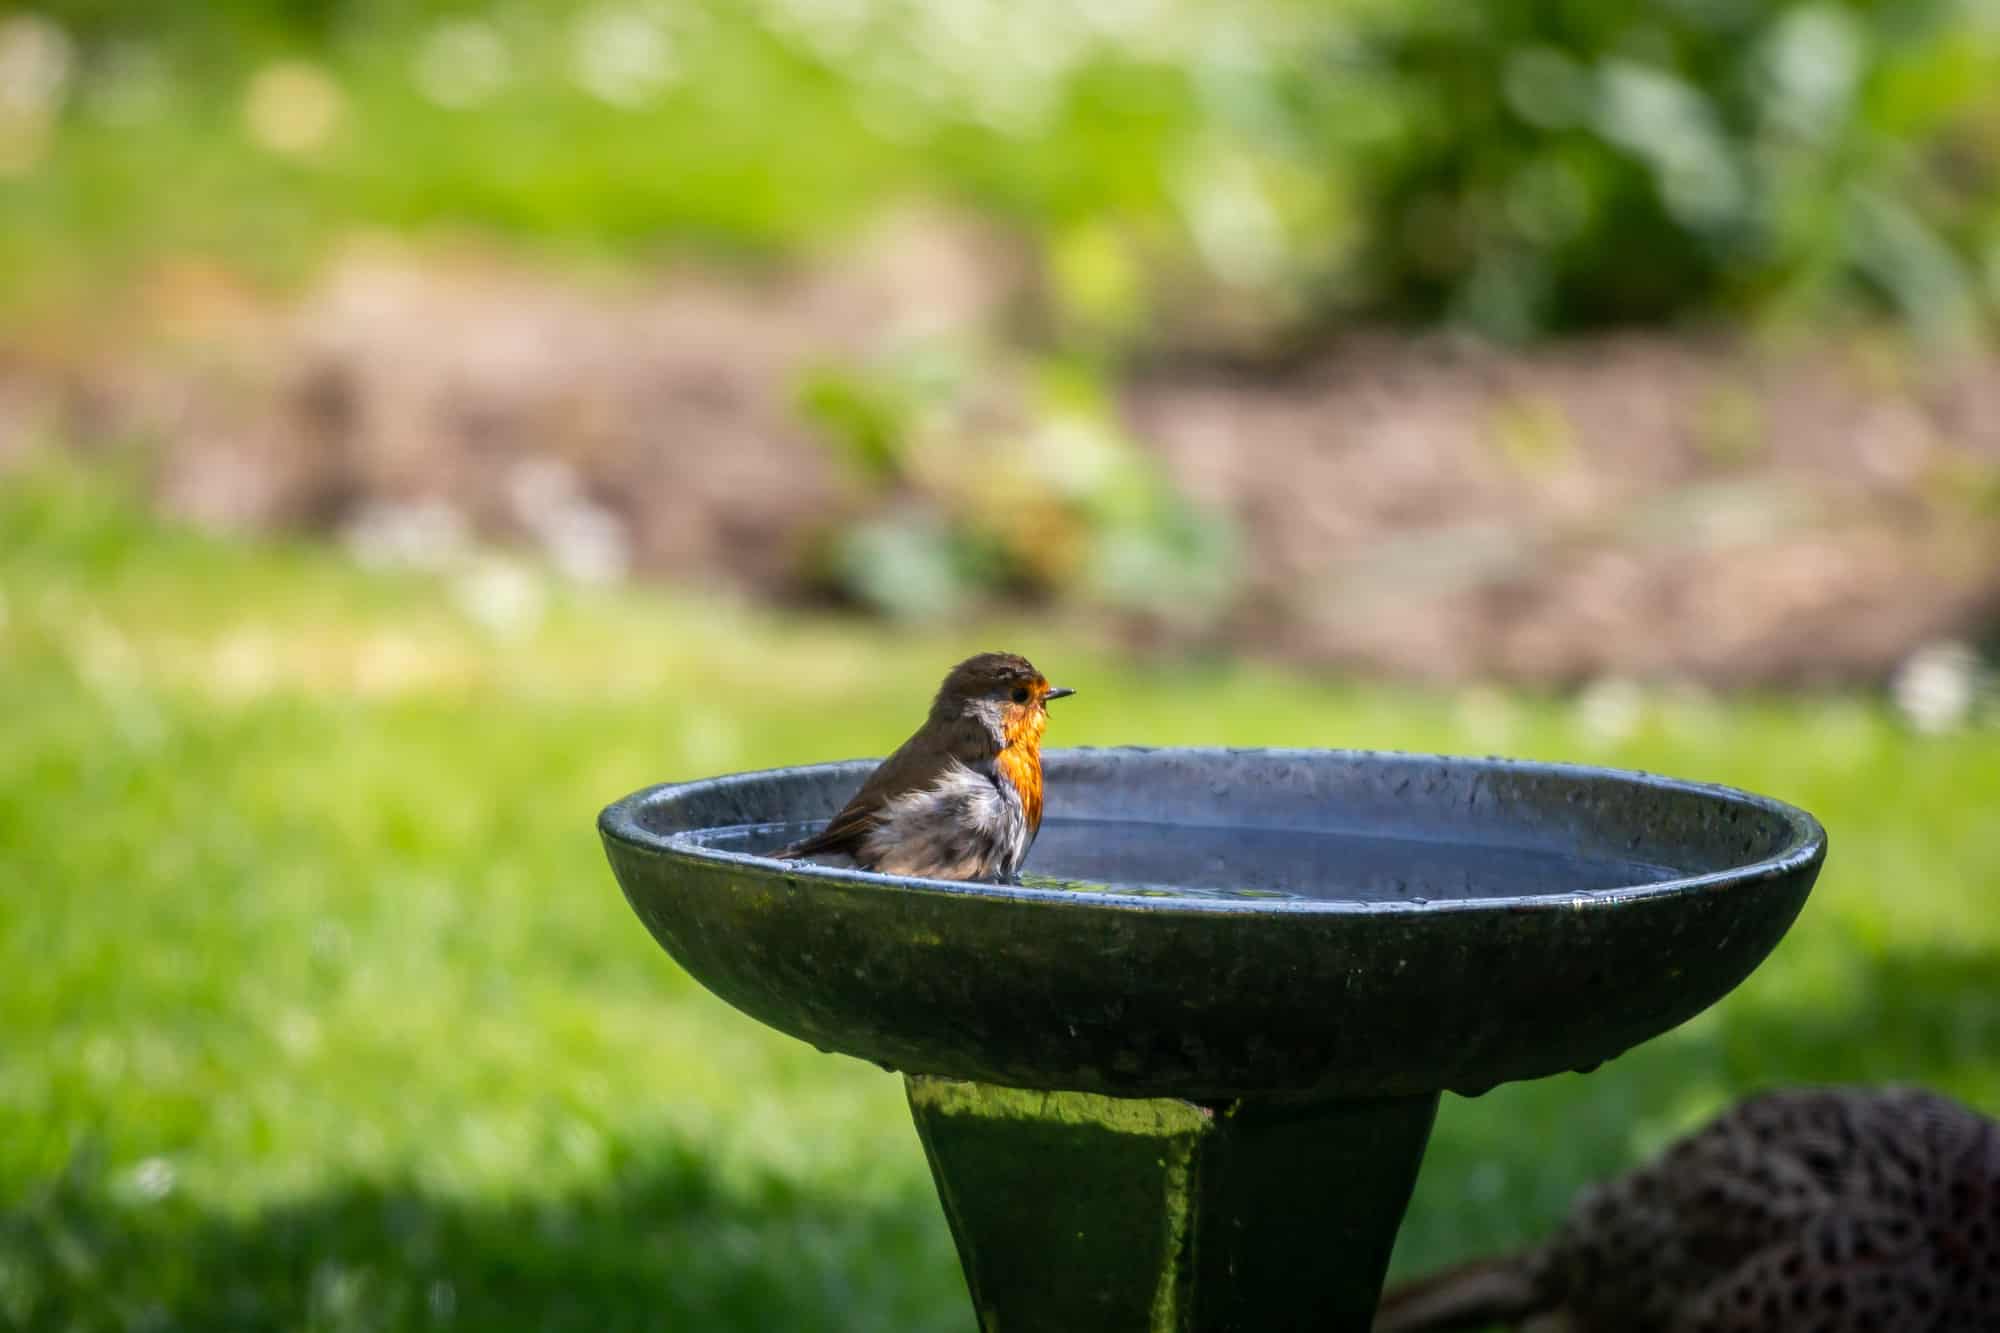 A Robin bathing in a bird bath